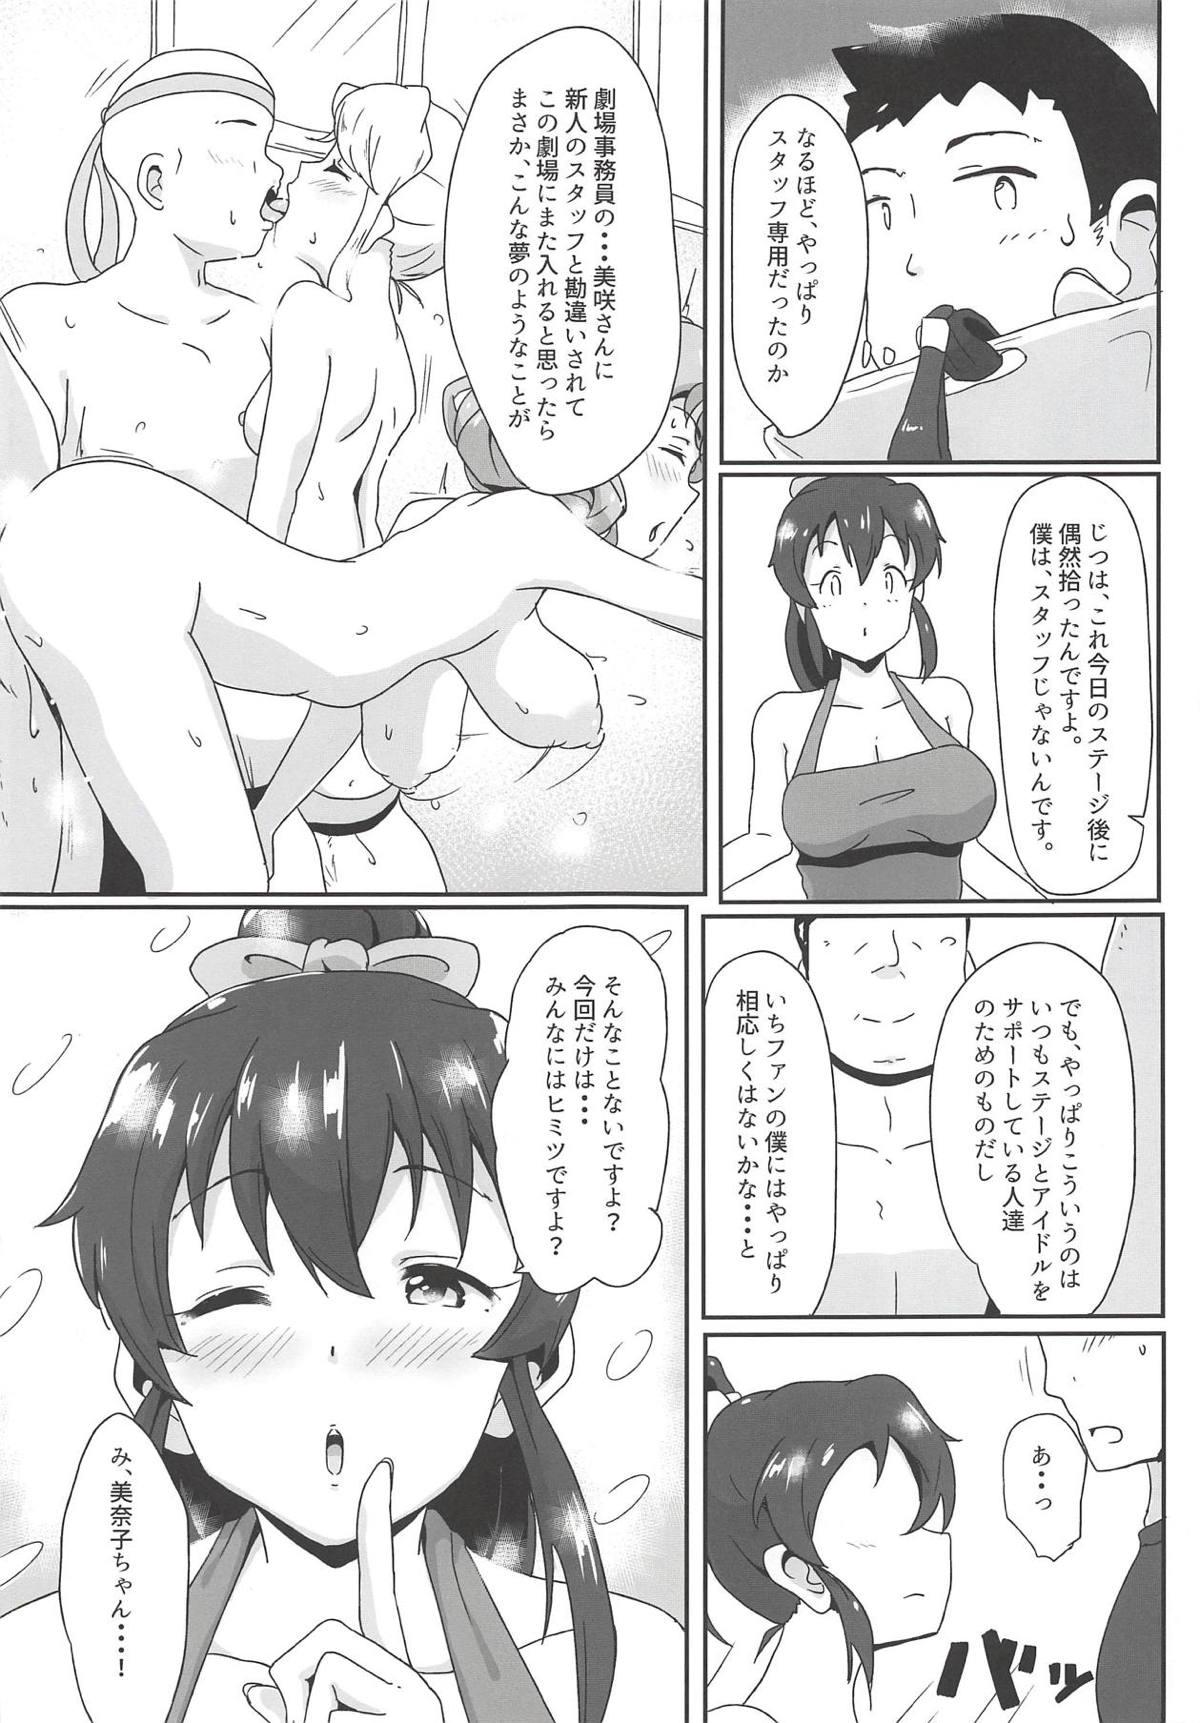 Perverted "Goshimei wa Minako desu ka?" - The idolmaster Rola - Page 12